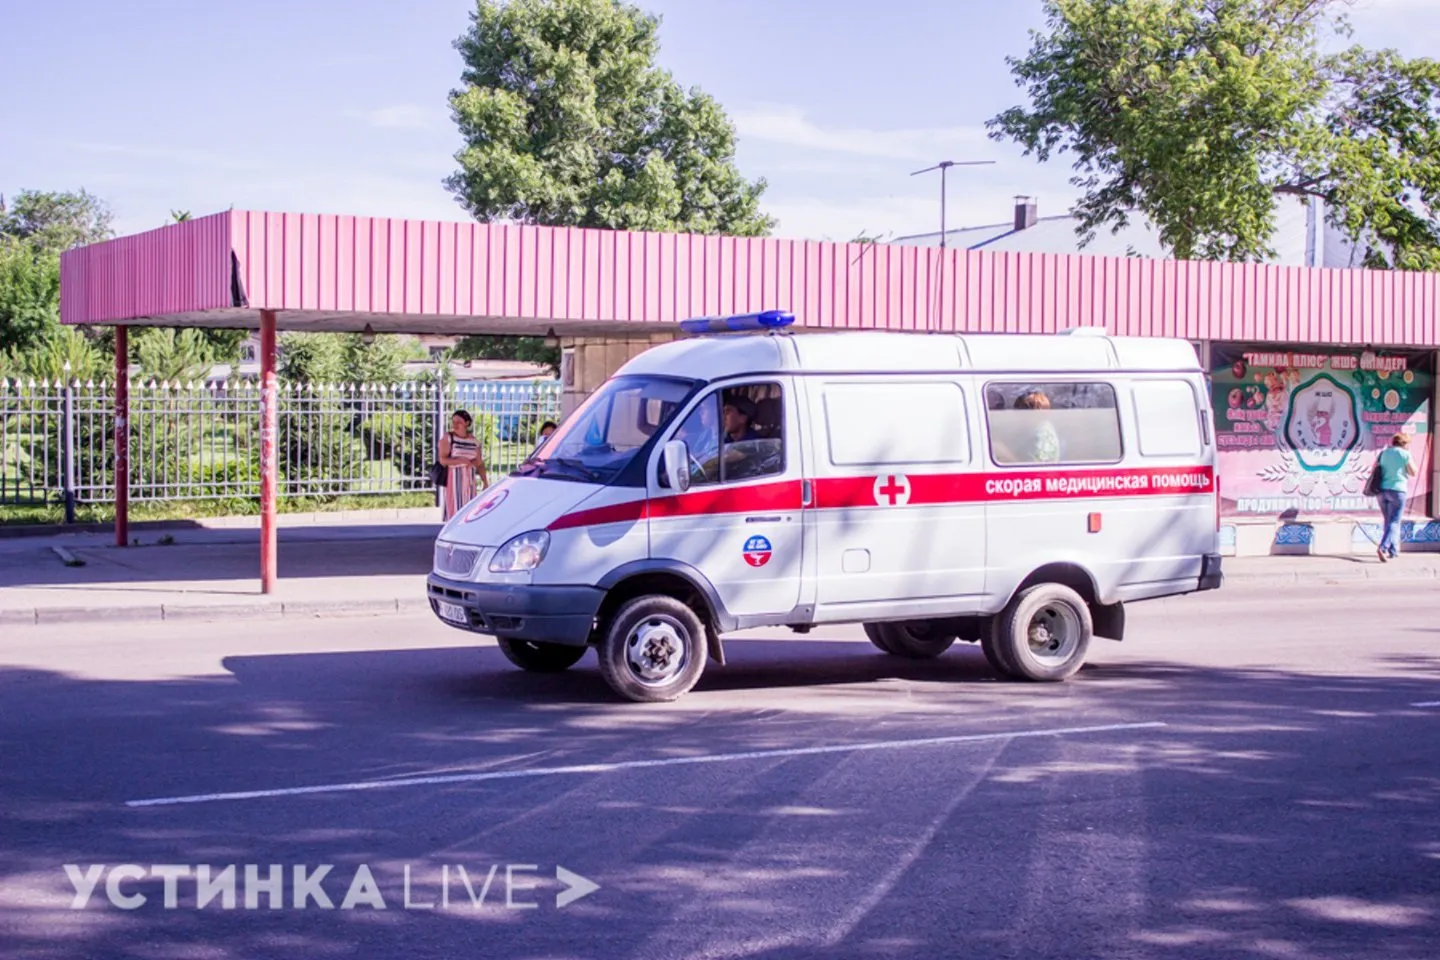 Усть-Каменогорск и ВКО / В ВКО за 21 августа выявили 3 случая заражения КВИ